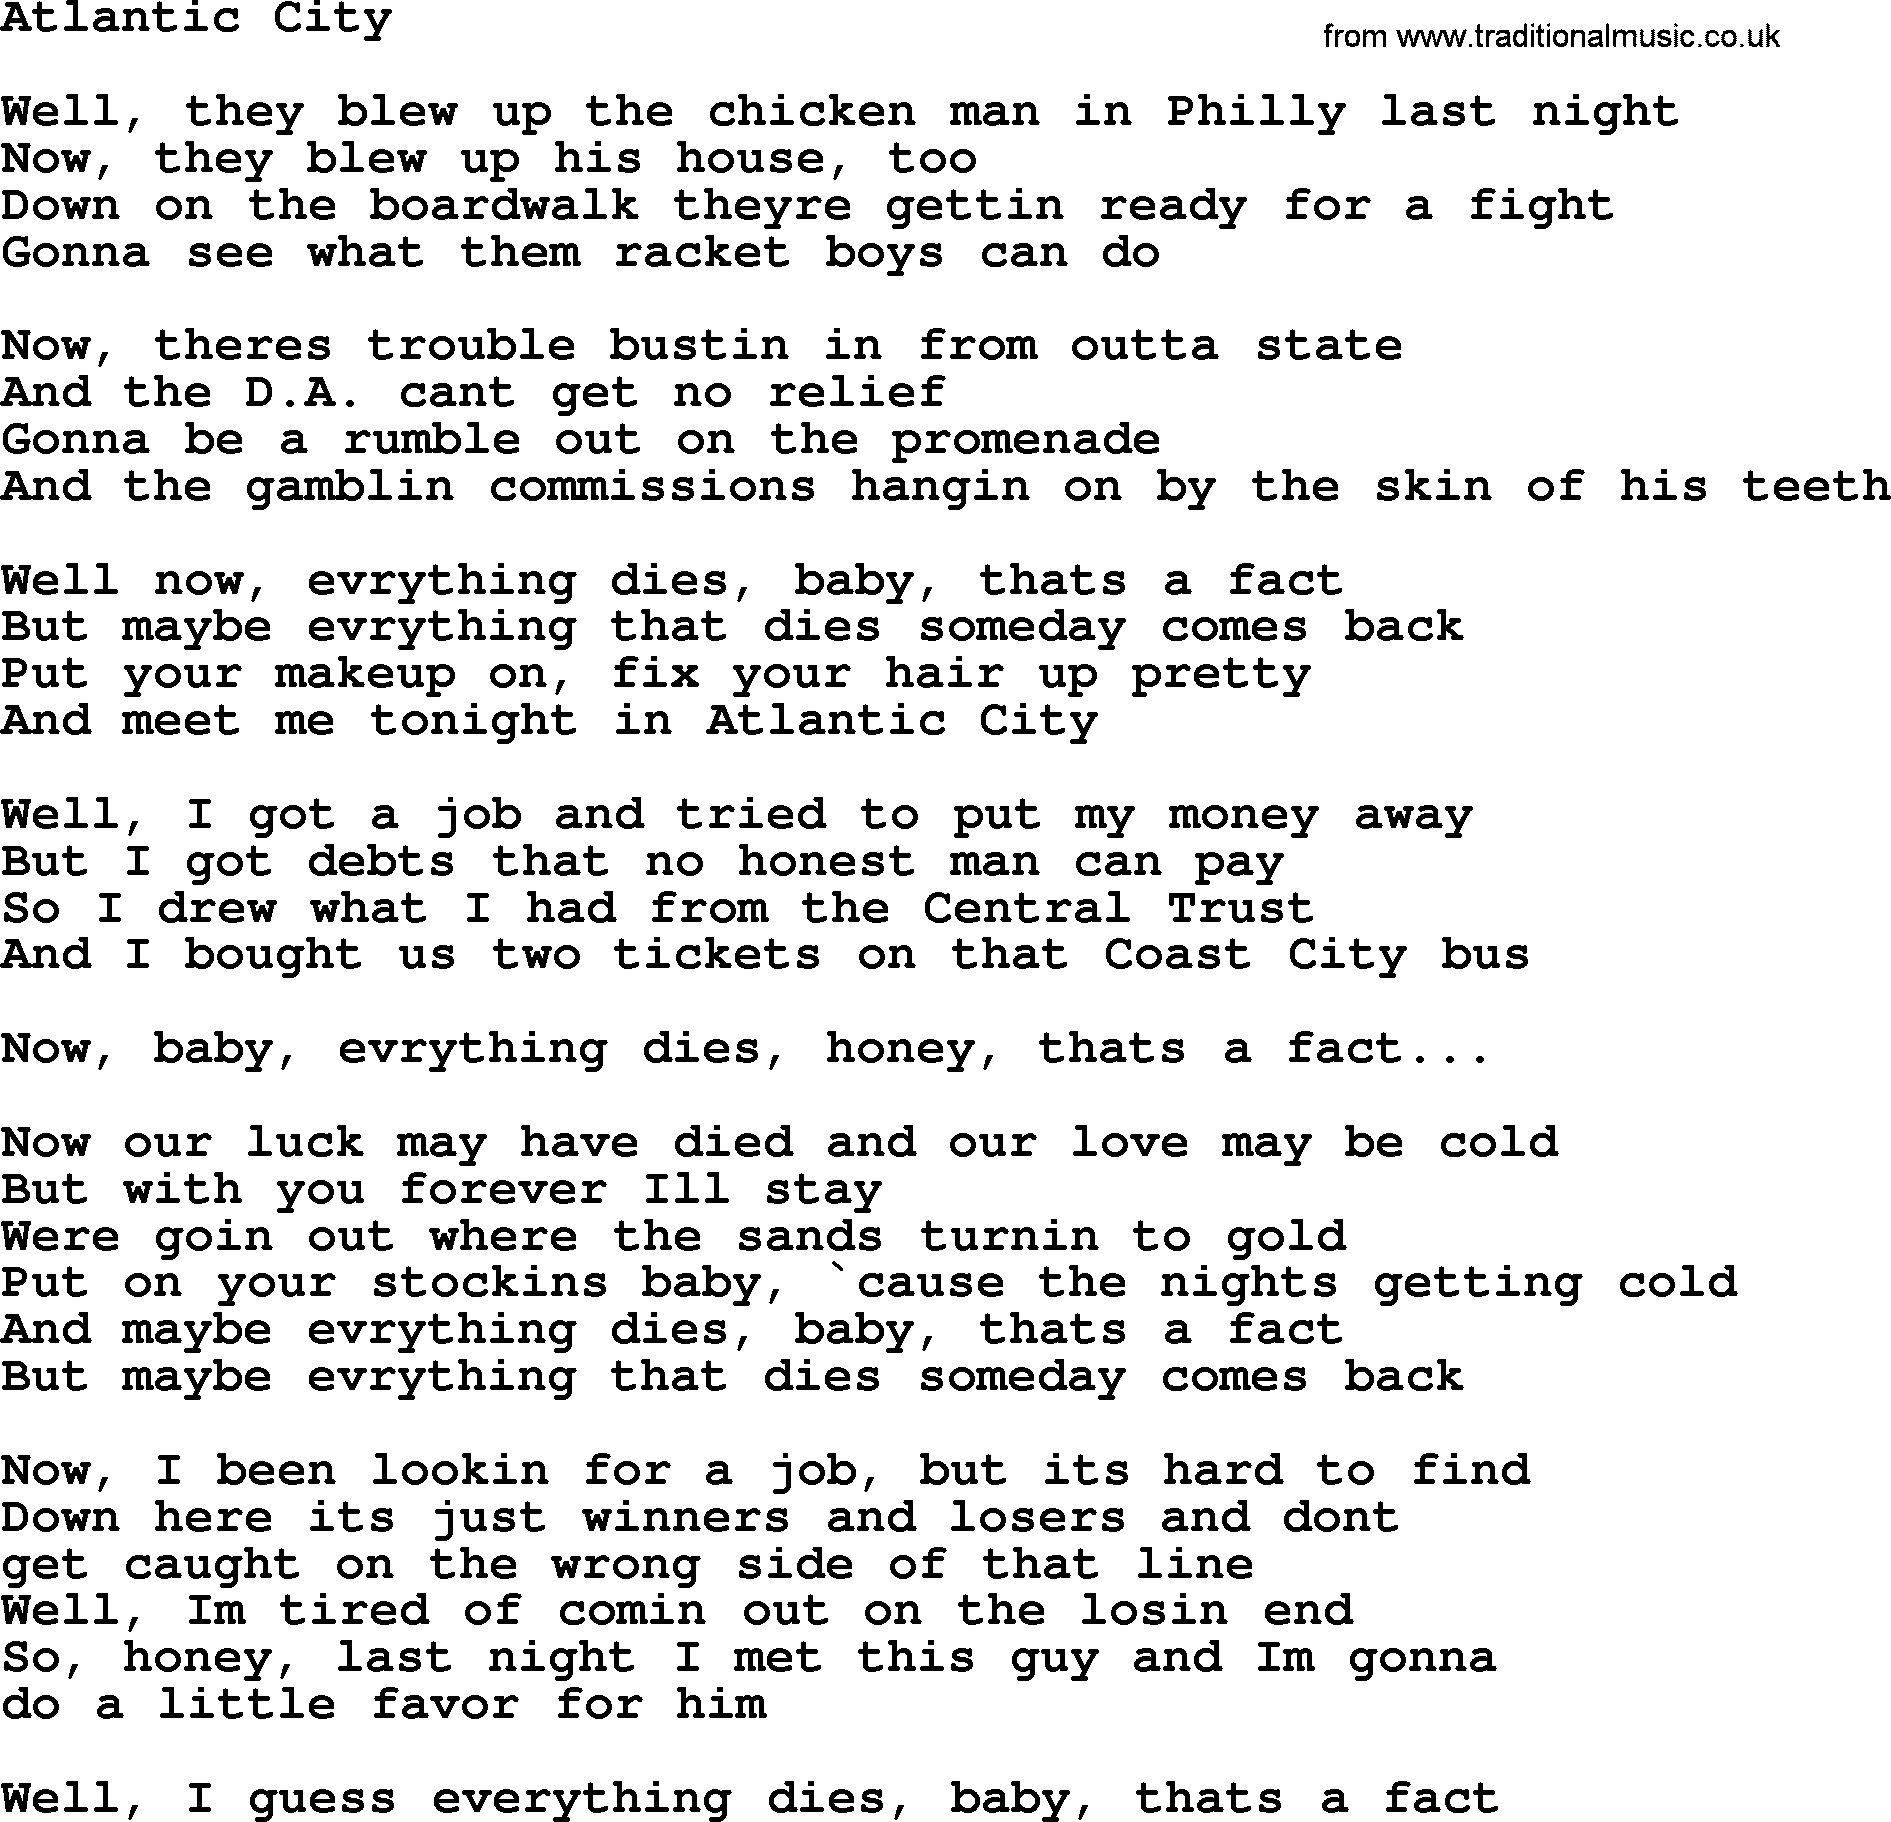 Bruce Springsteen song: Atlantic City lyrics